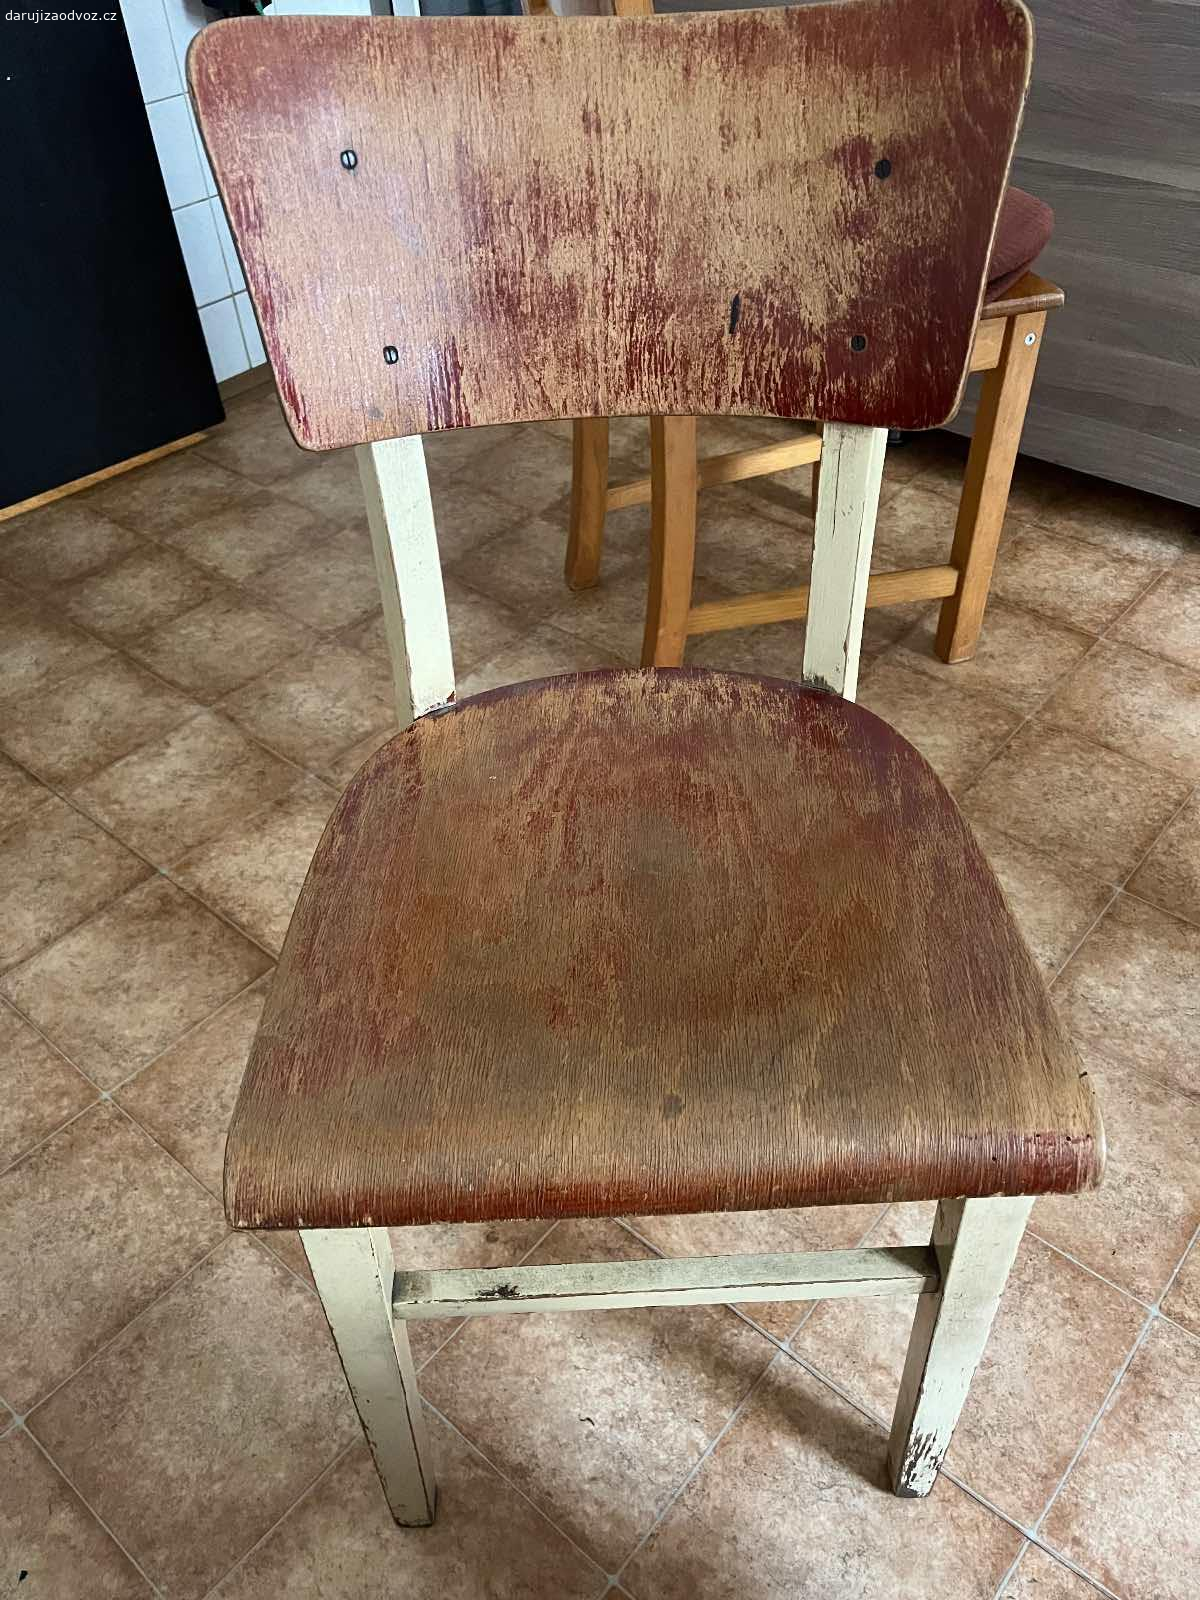 Dřevěná židle k renovaci. Starý, poctivý kousek